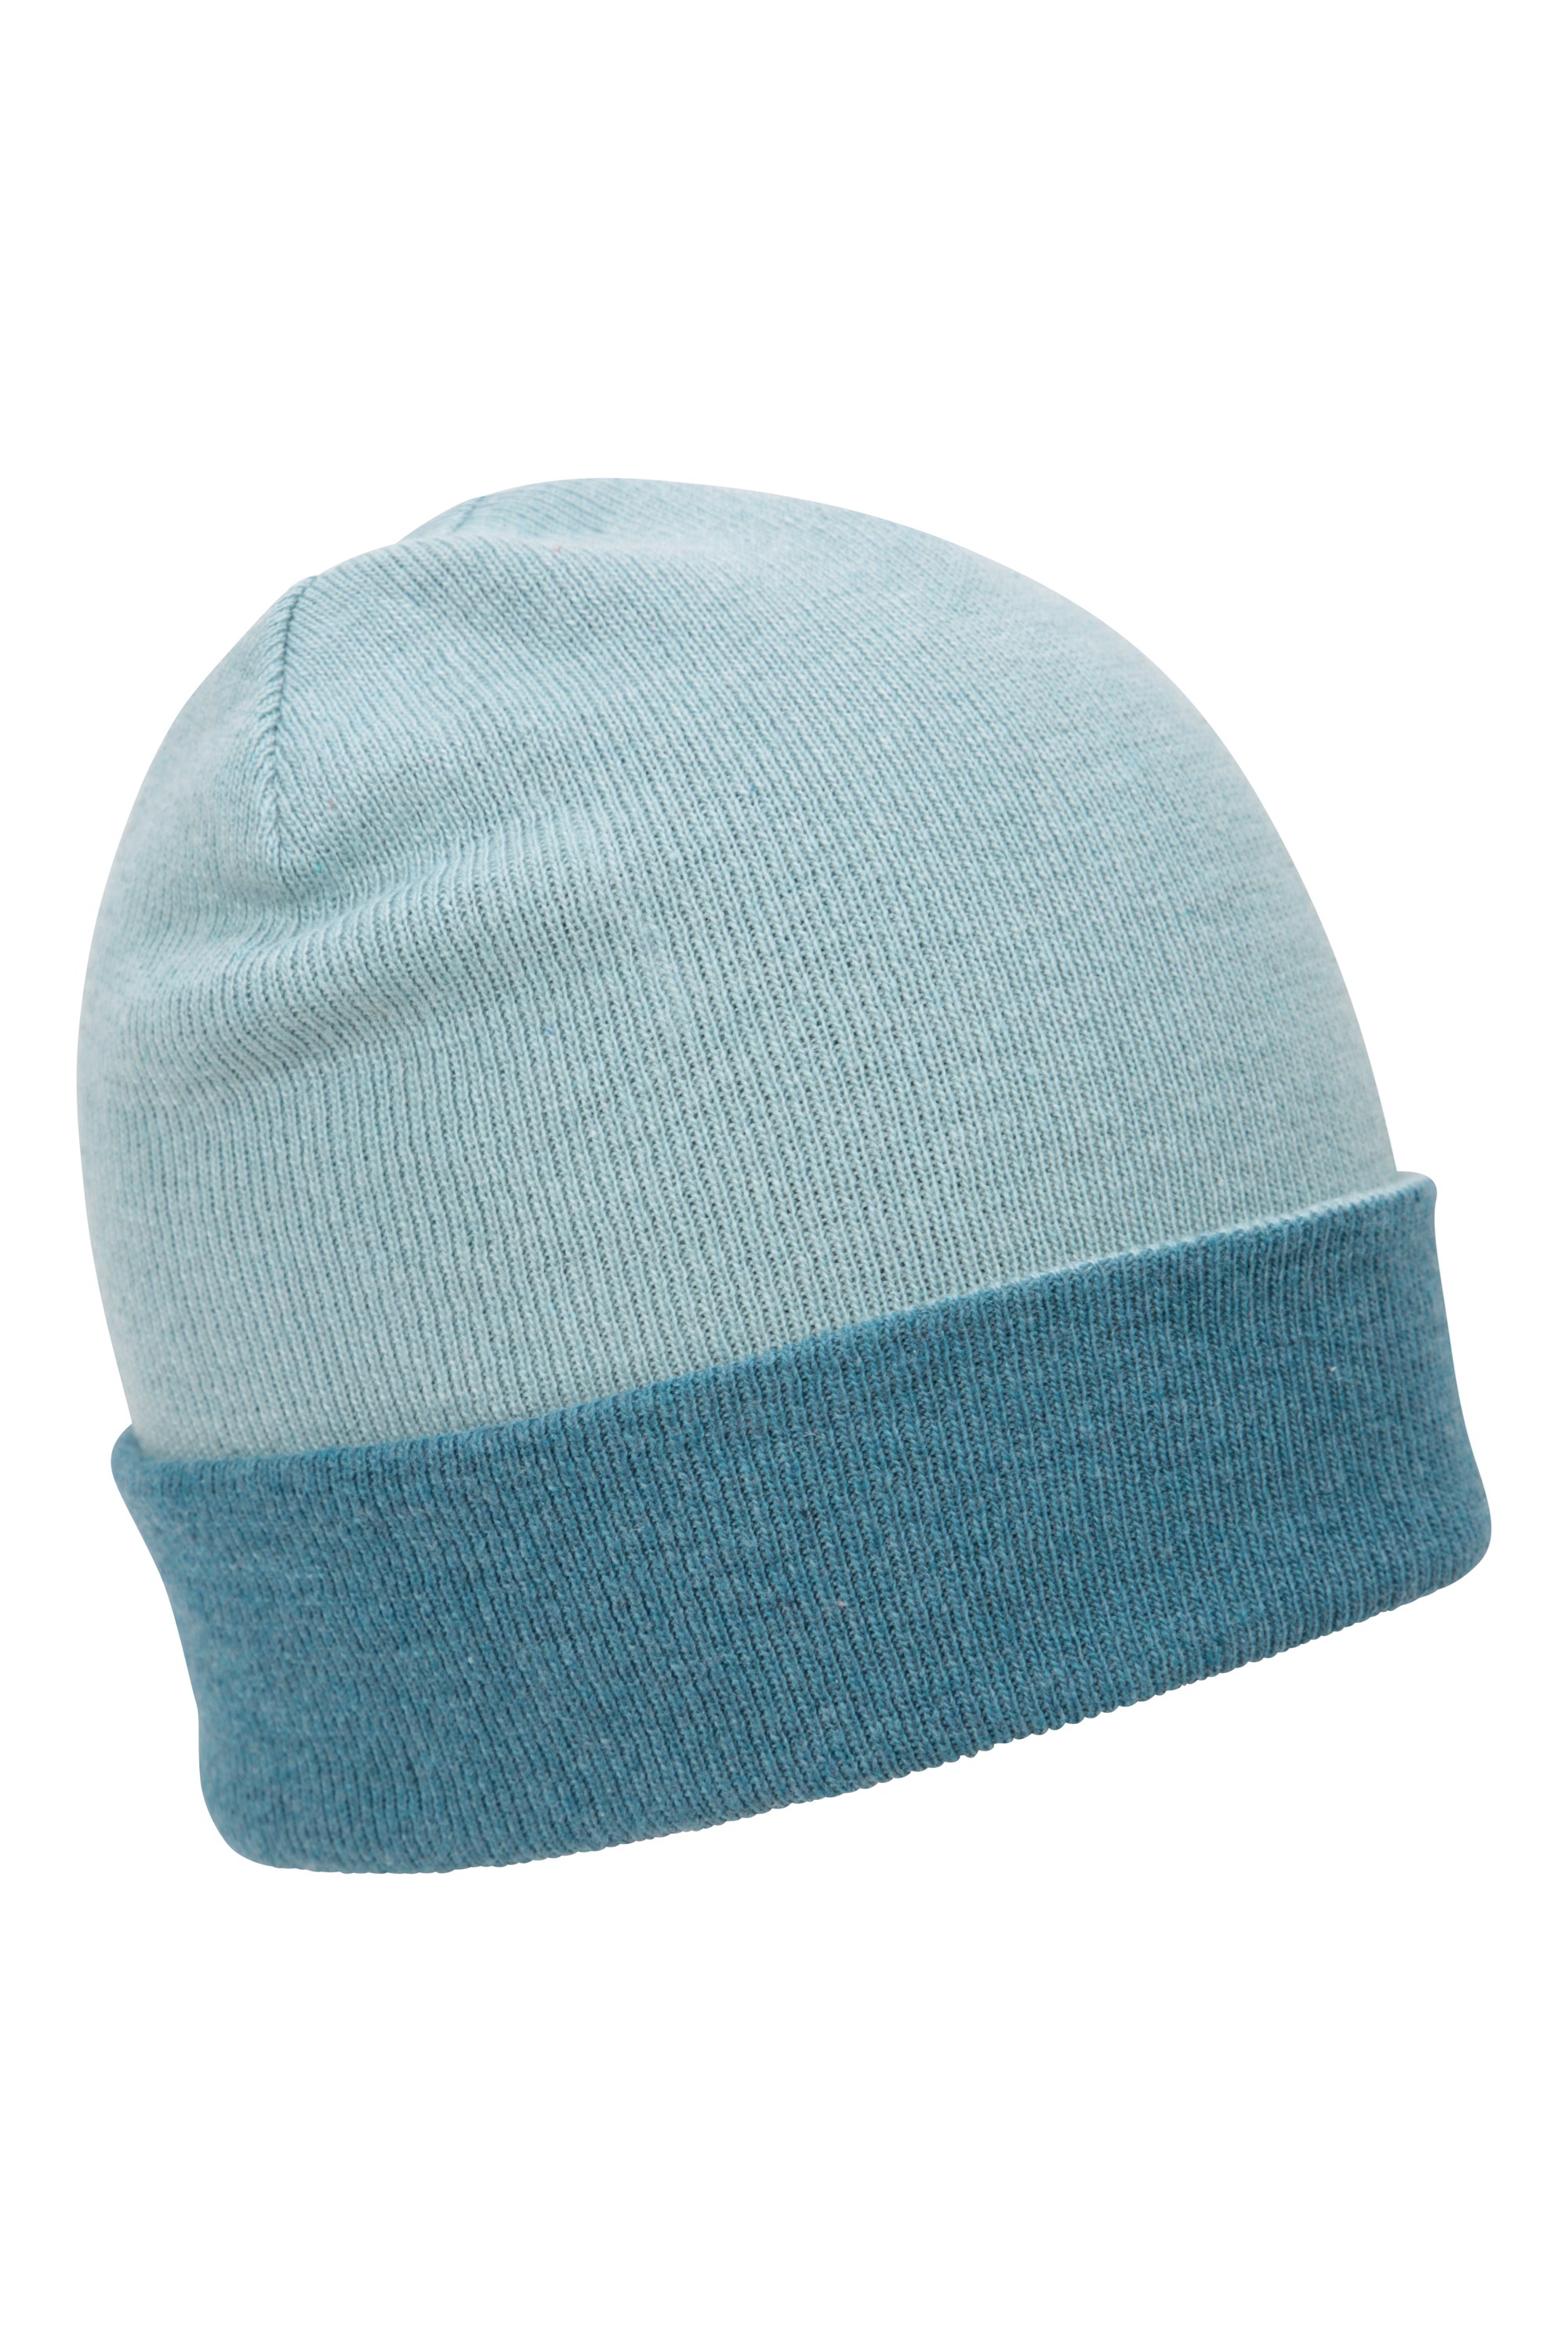 Augusta — dwustronna czapka z materiałów pochodzących z recyklingu - Blue